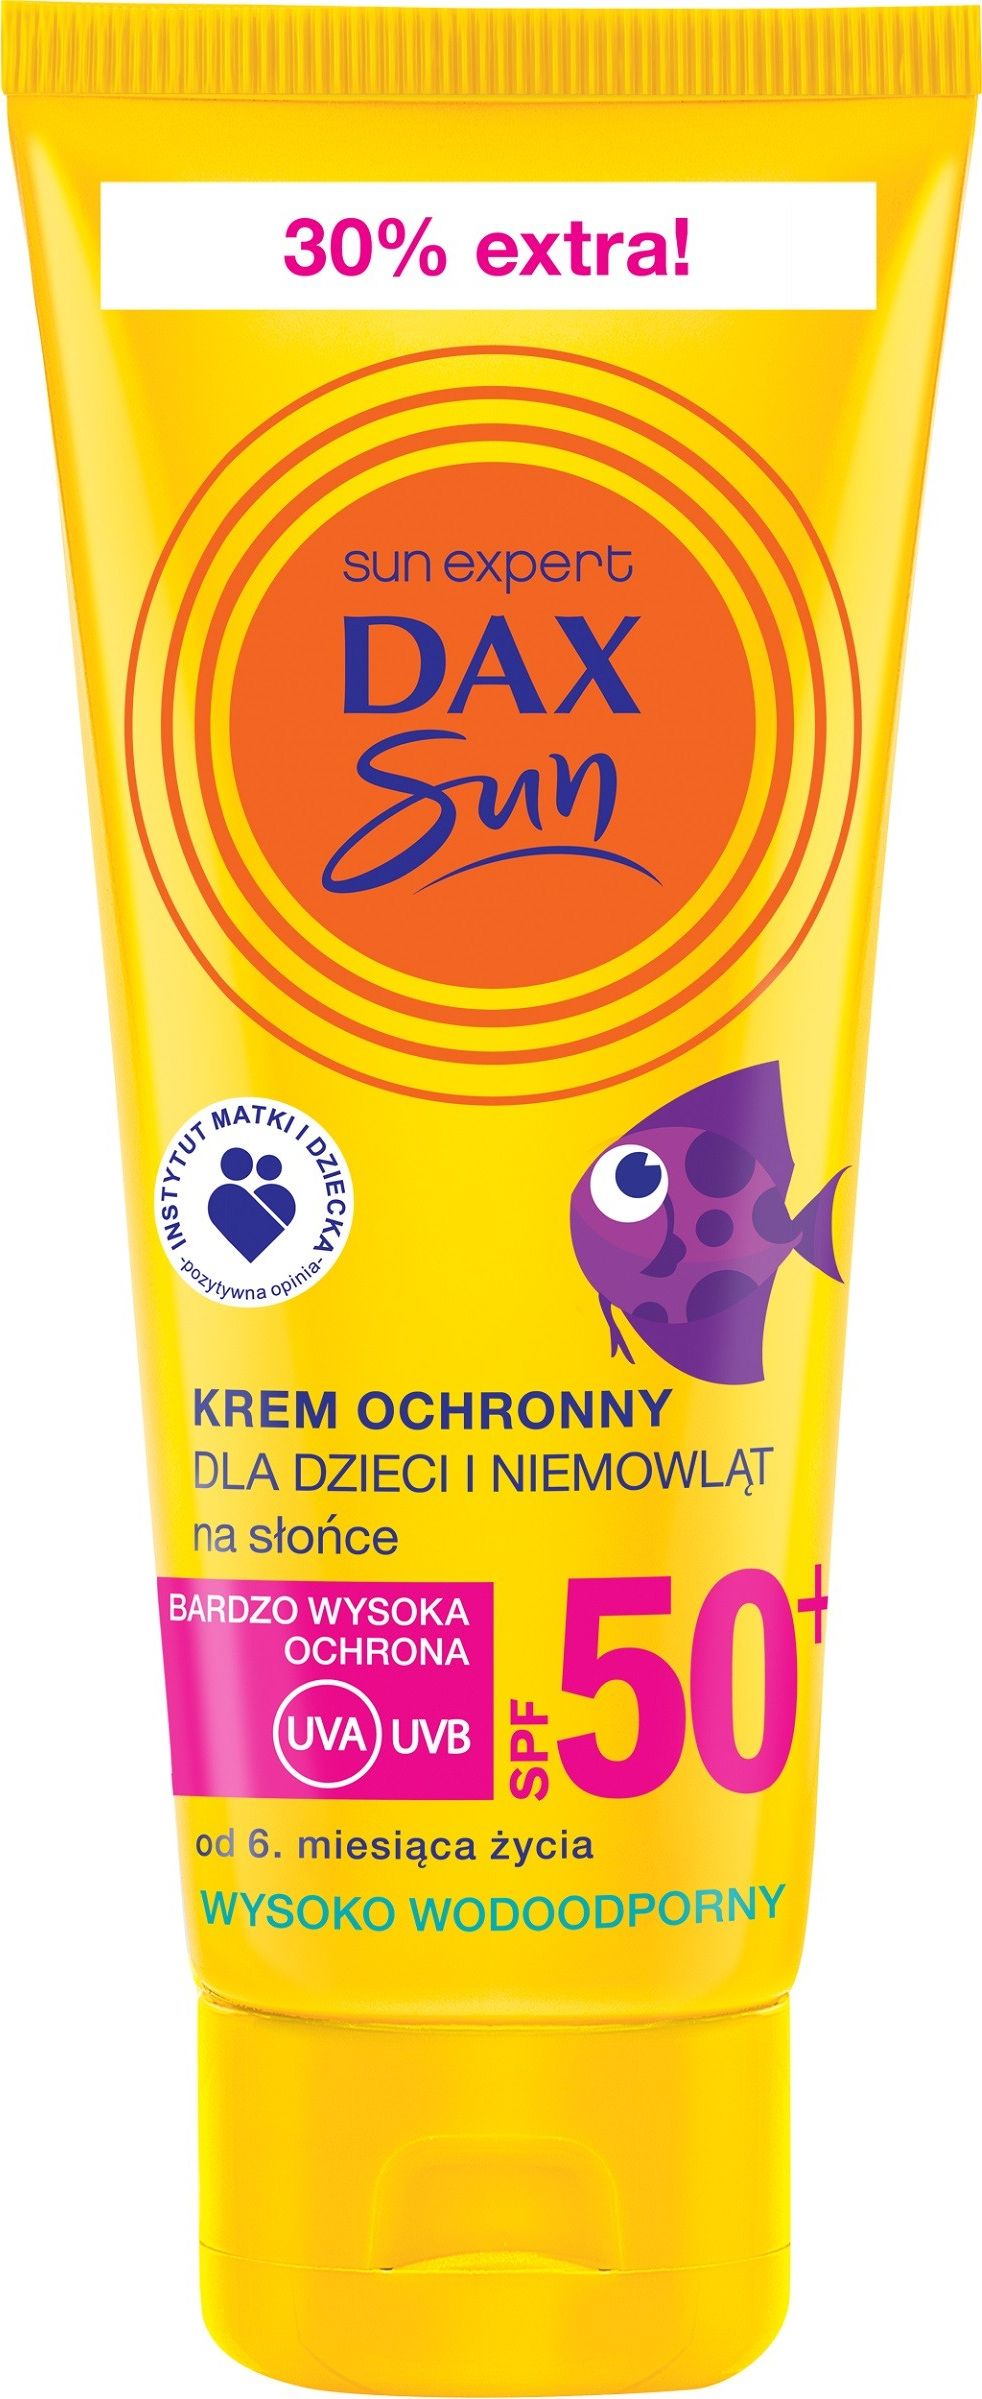 Dax Sun Krem ochronny dla dzieci i niemowlat SPF 50+, 75ml 073459 (5900525053459)